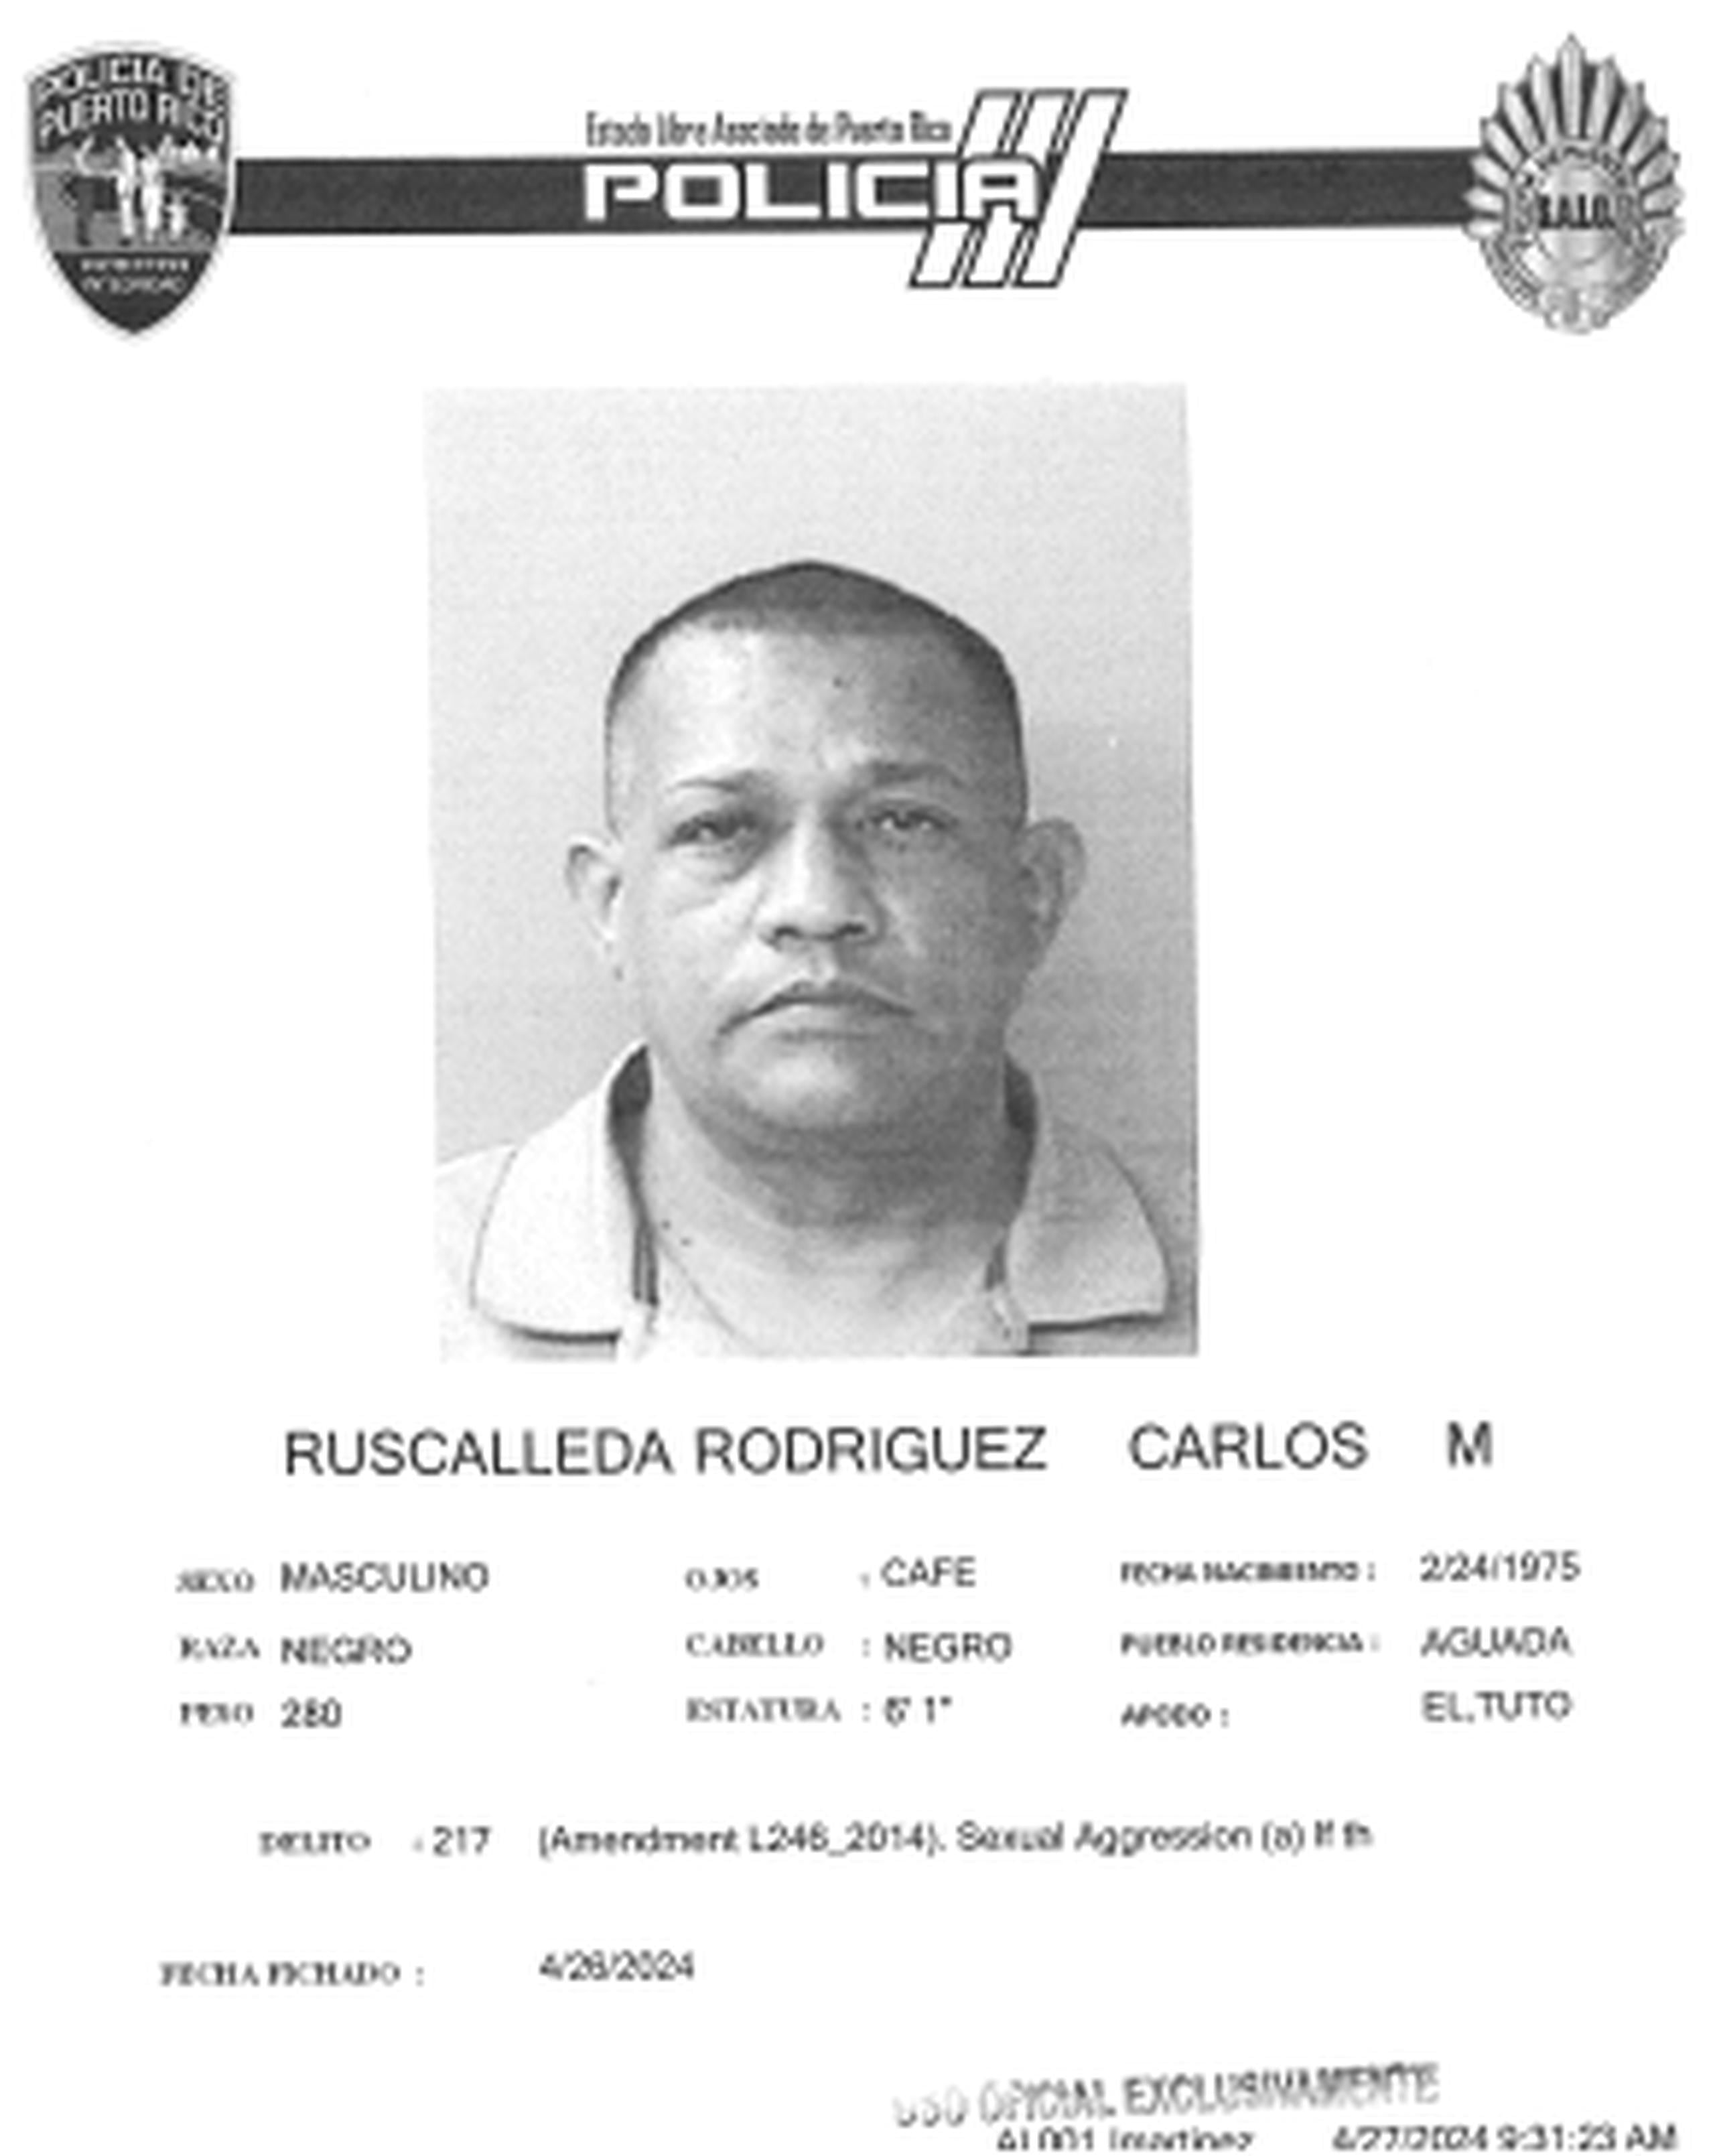 Ficha policiaca de Carlos M. Ruscalleda Rodríguez, conocido como El Tuto.